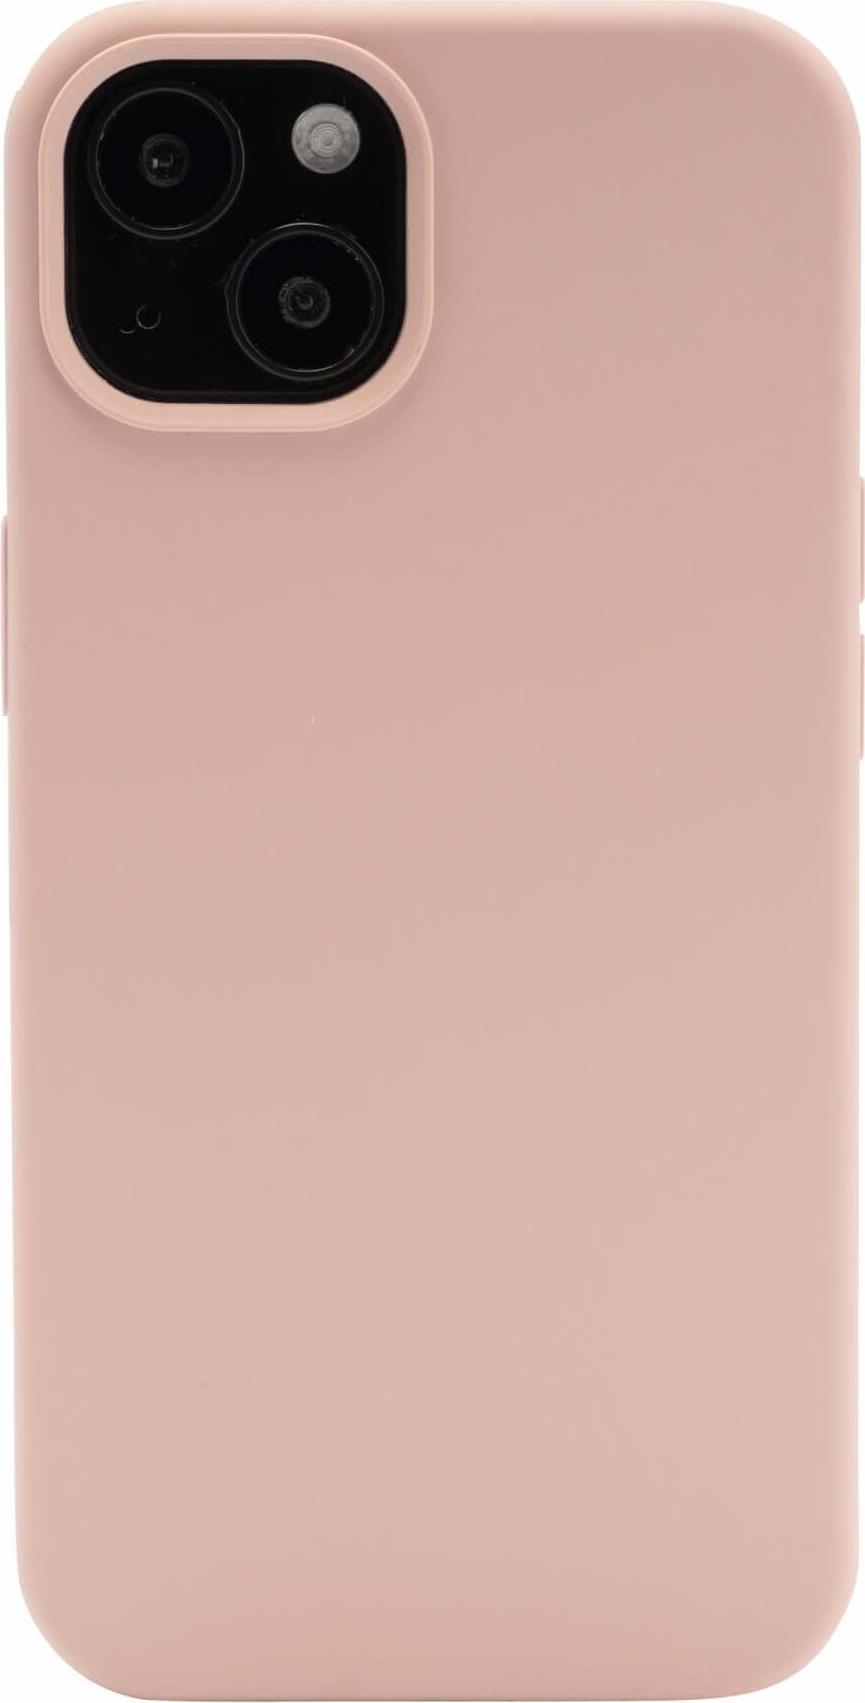 Menatwork Steglitz Handy-Schutzhülle 13,7 cm (5.4 ) Cover Pink - Sand (10773)